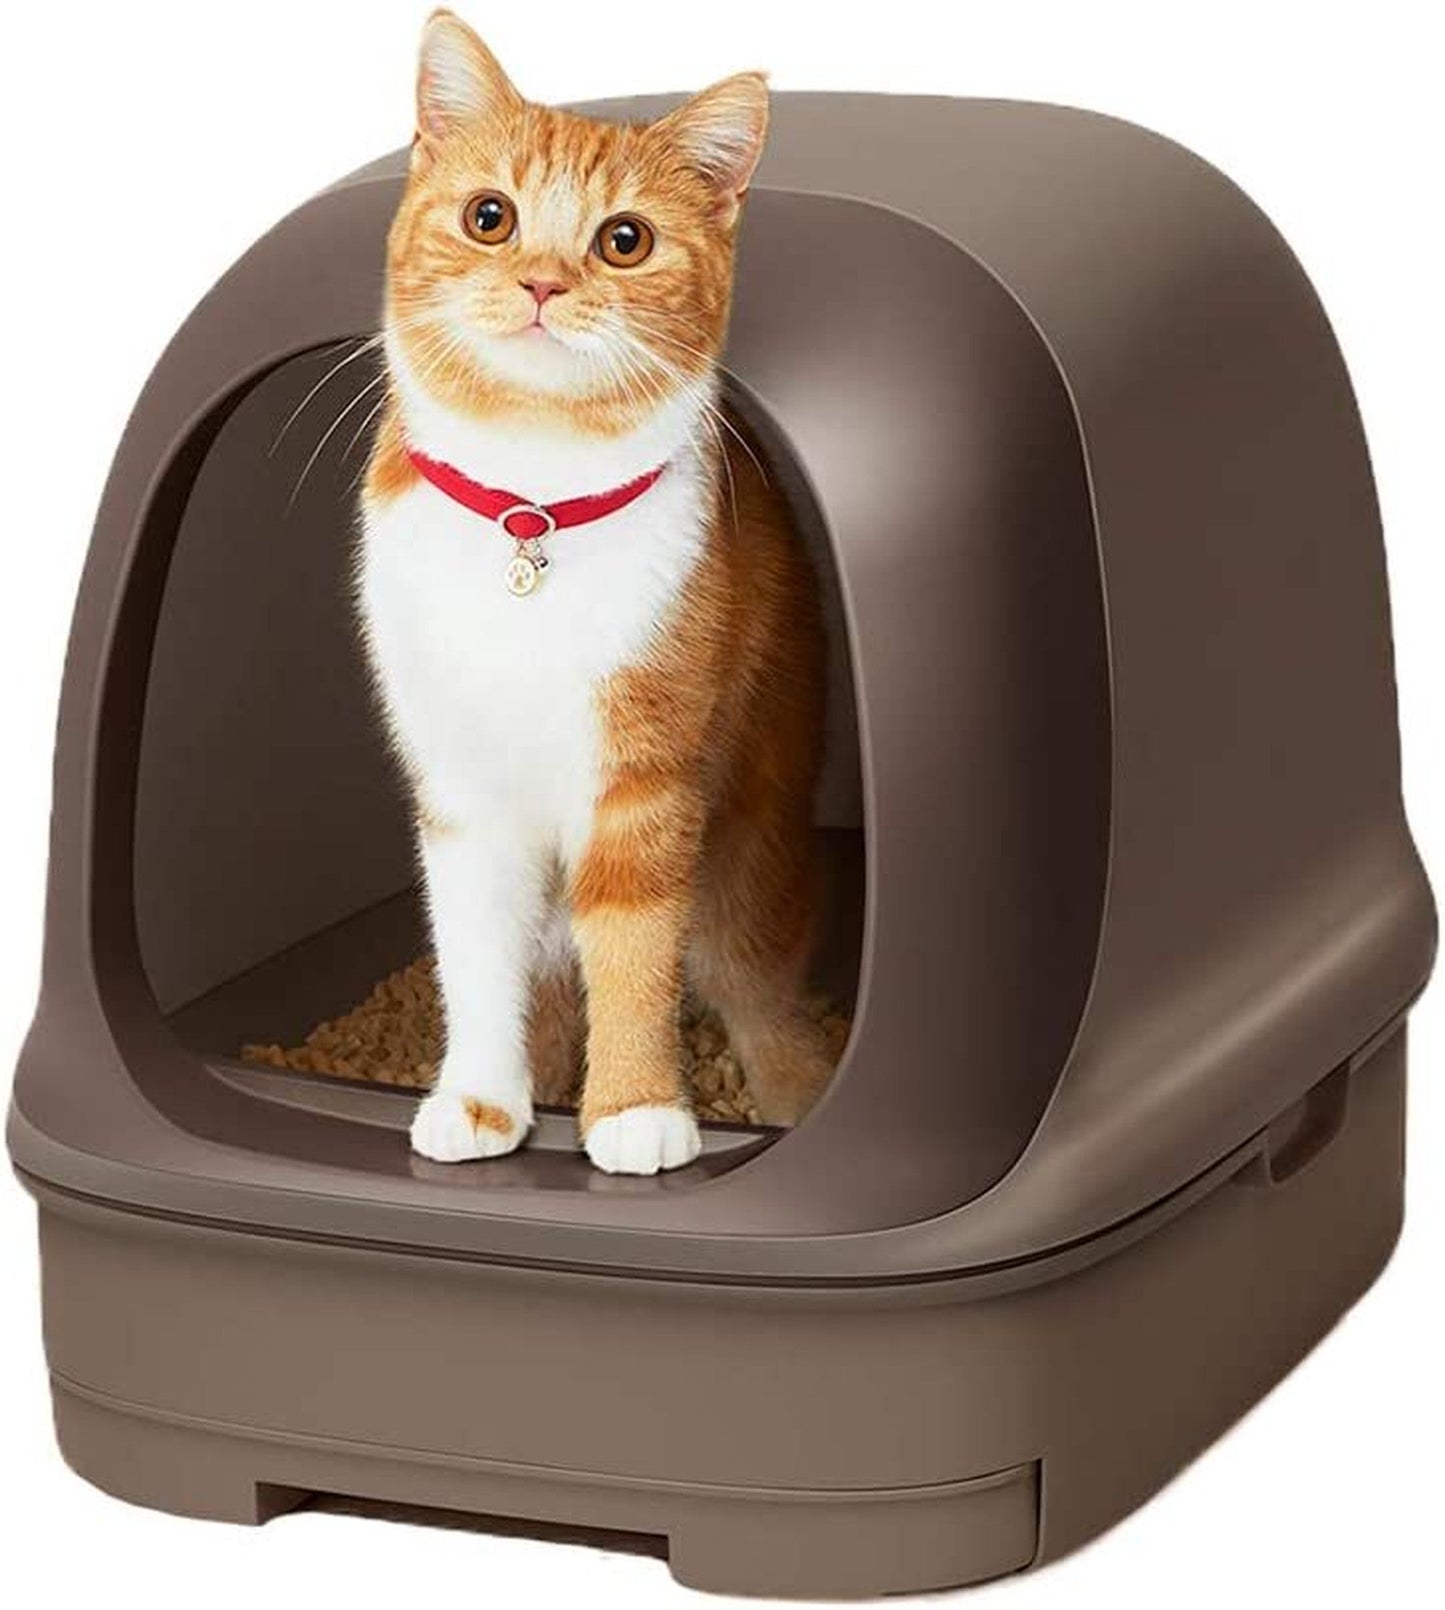 ニャンとも清潔トイレセット [約1か月分チップ・シート付] 猫用トイレ本体 ドームタイプ ブラウン